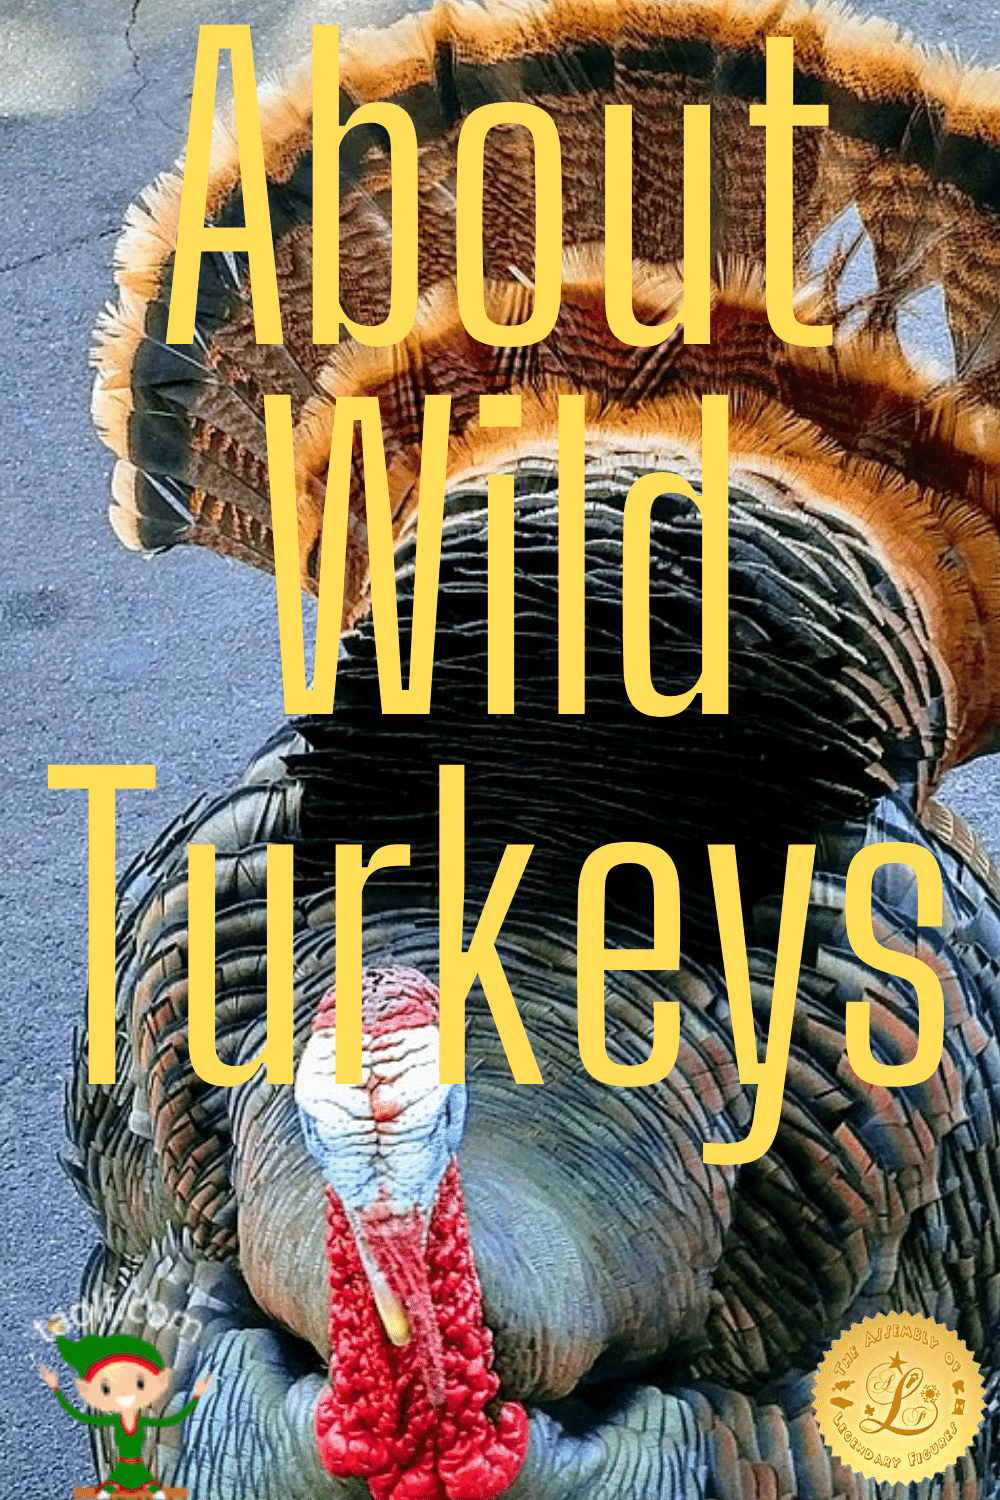 All About Wild Turkeys